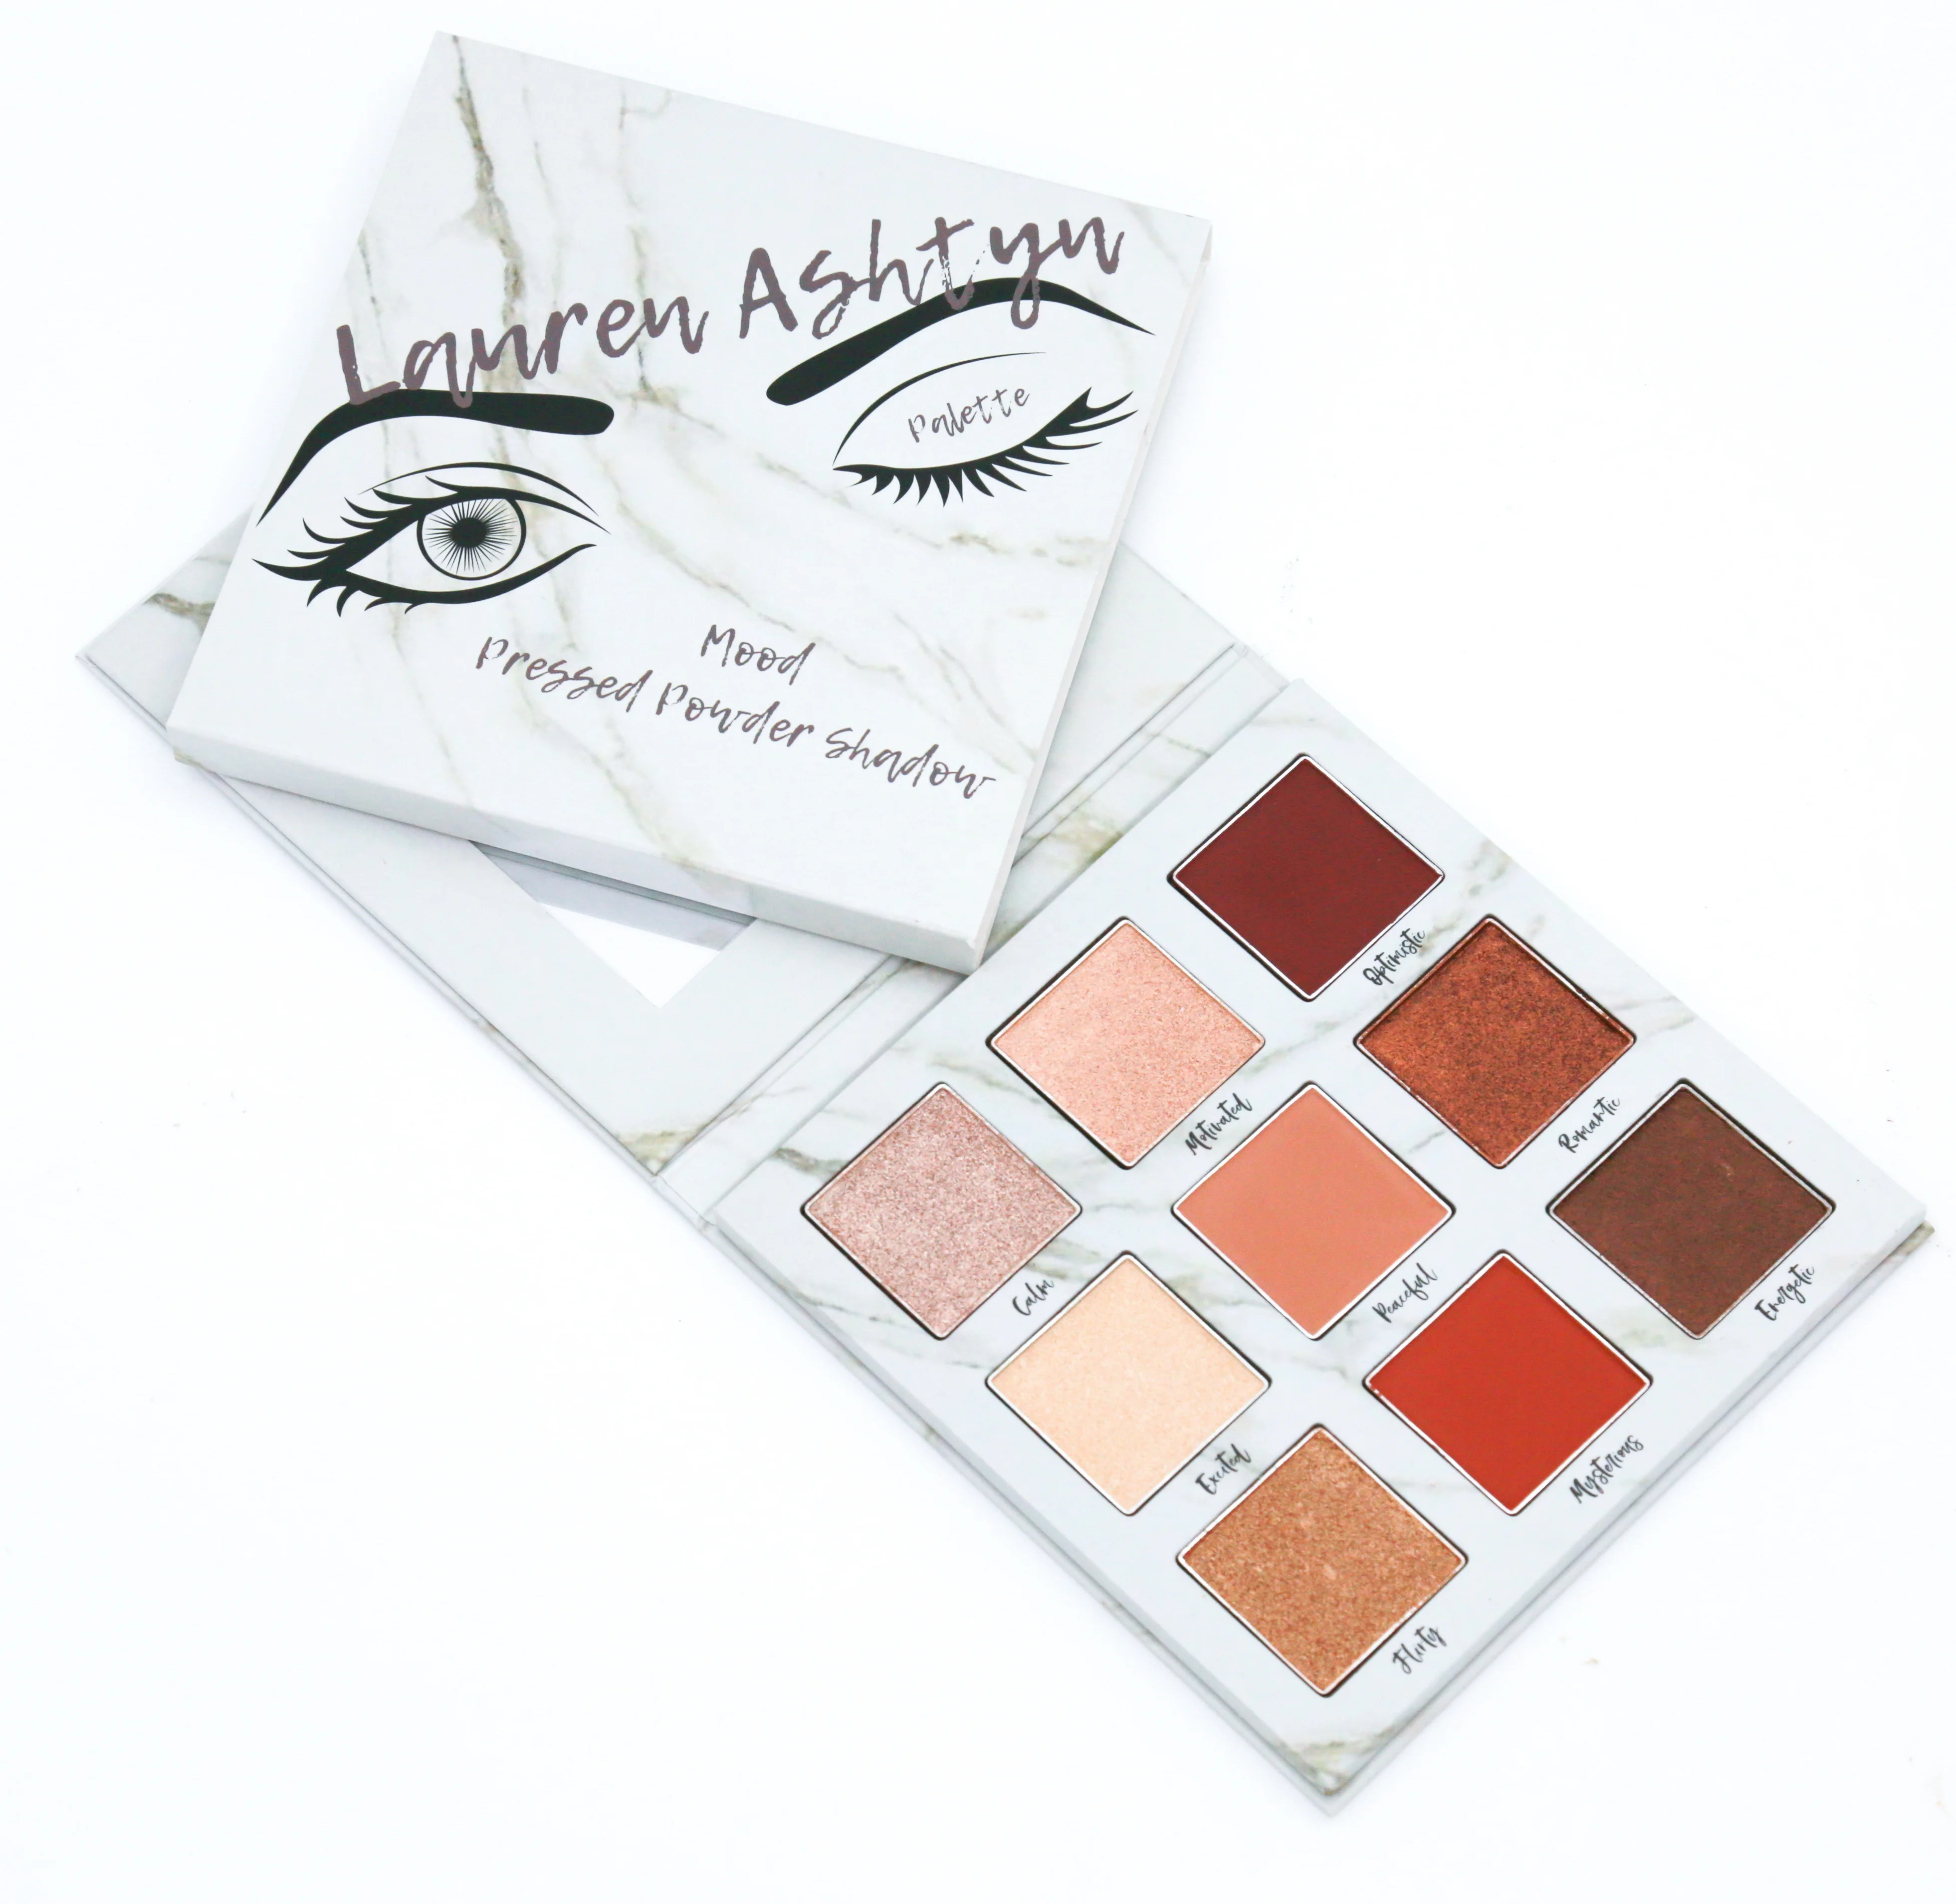 Luxury paper makeup packaging eyeshadow palette with mirror